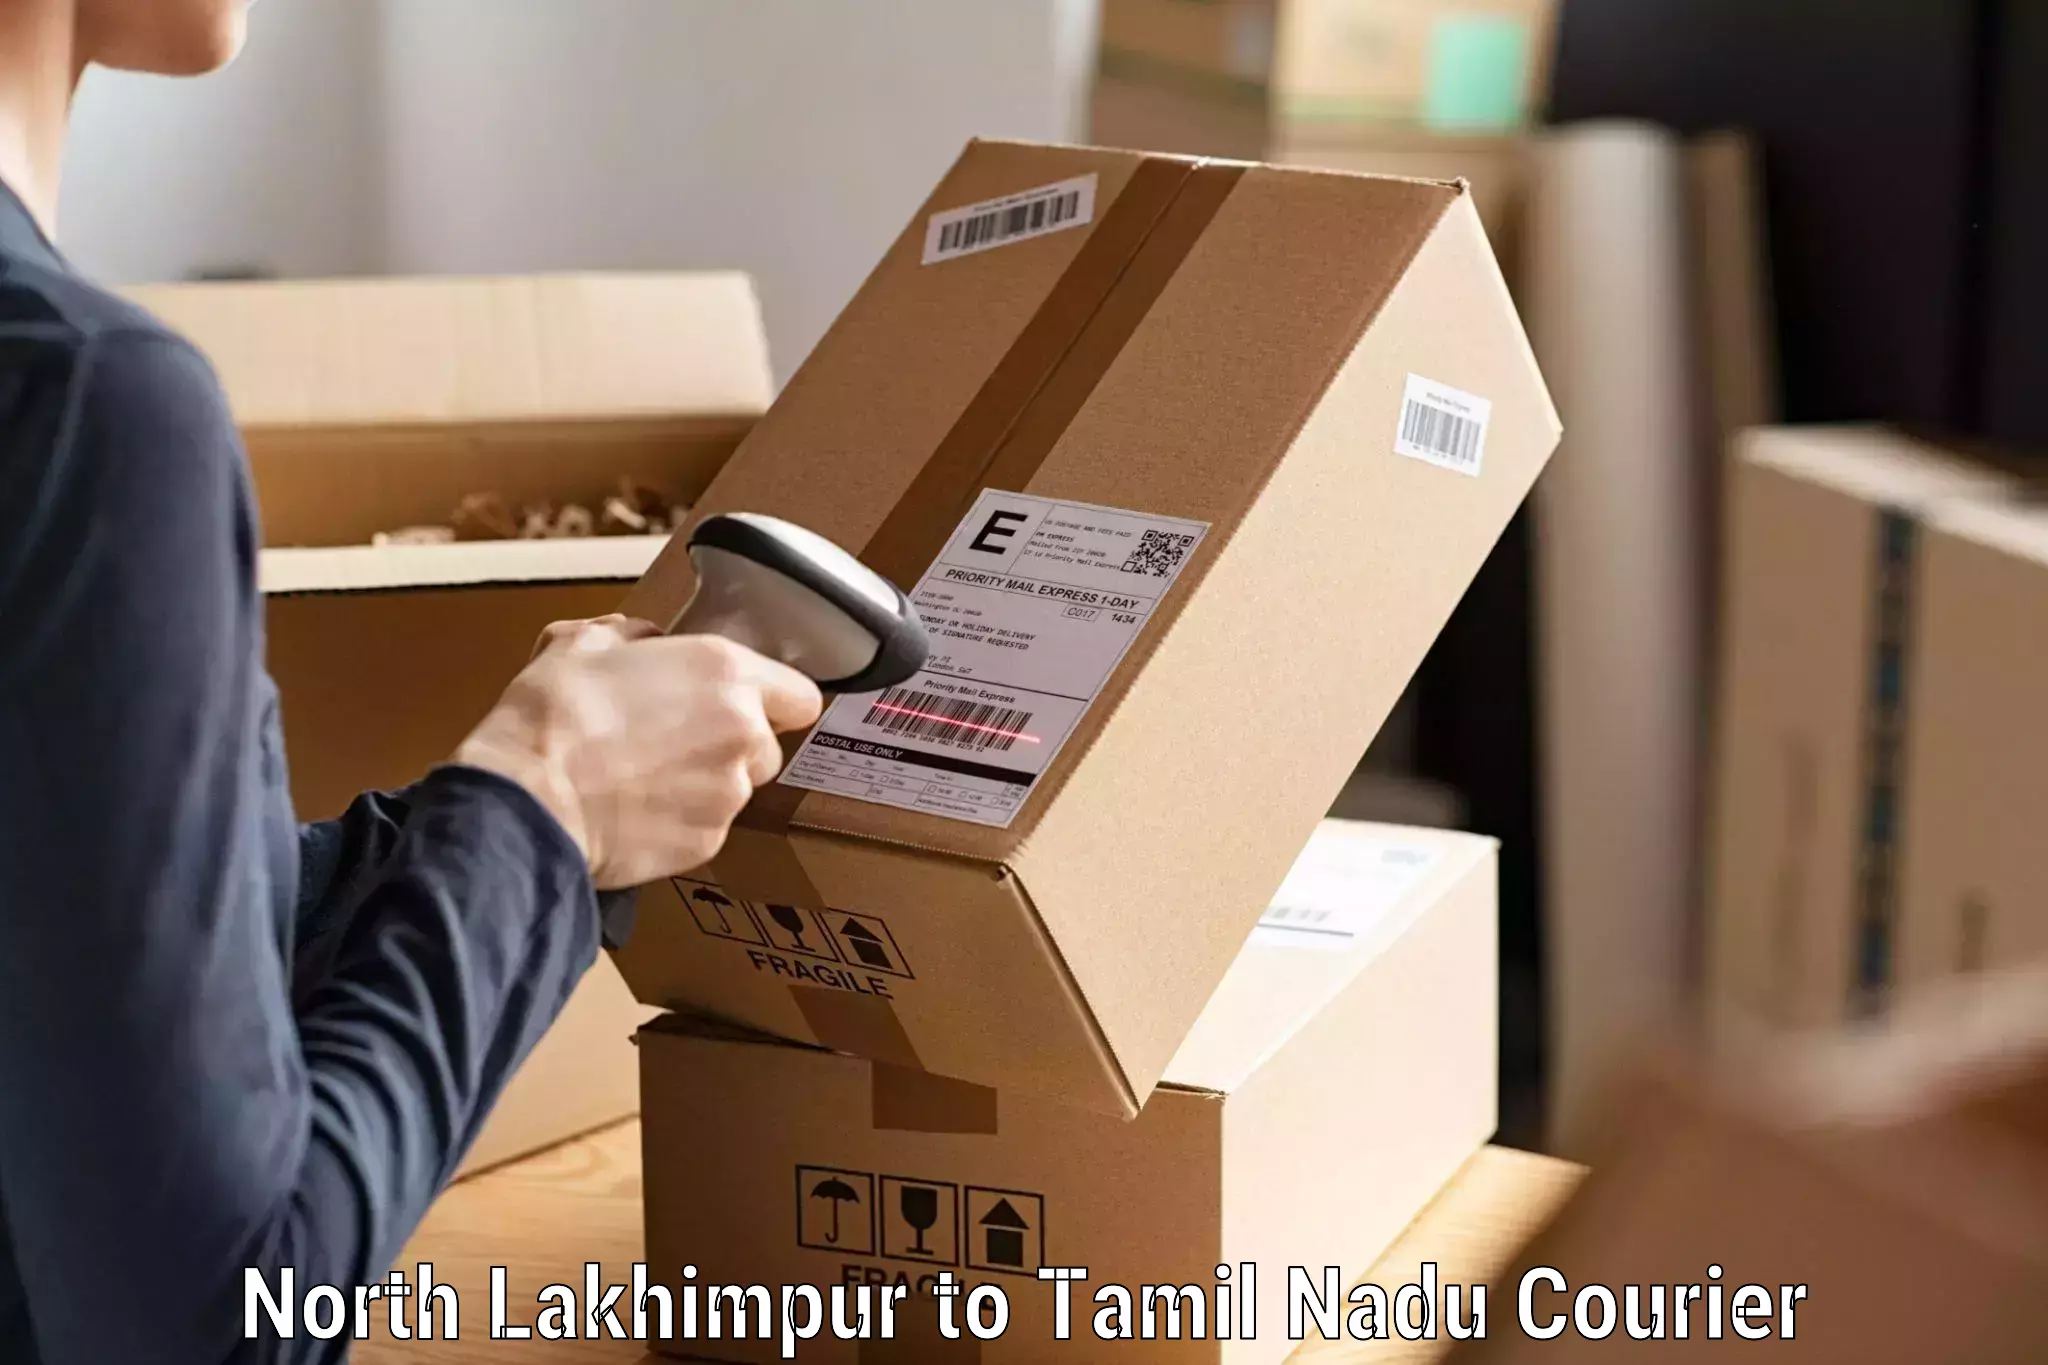 Premium courier solutions North Lakhimpur to Tuticorin Port